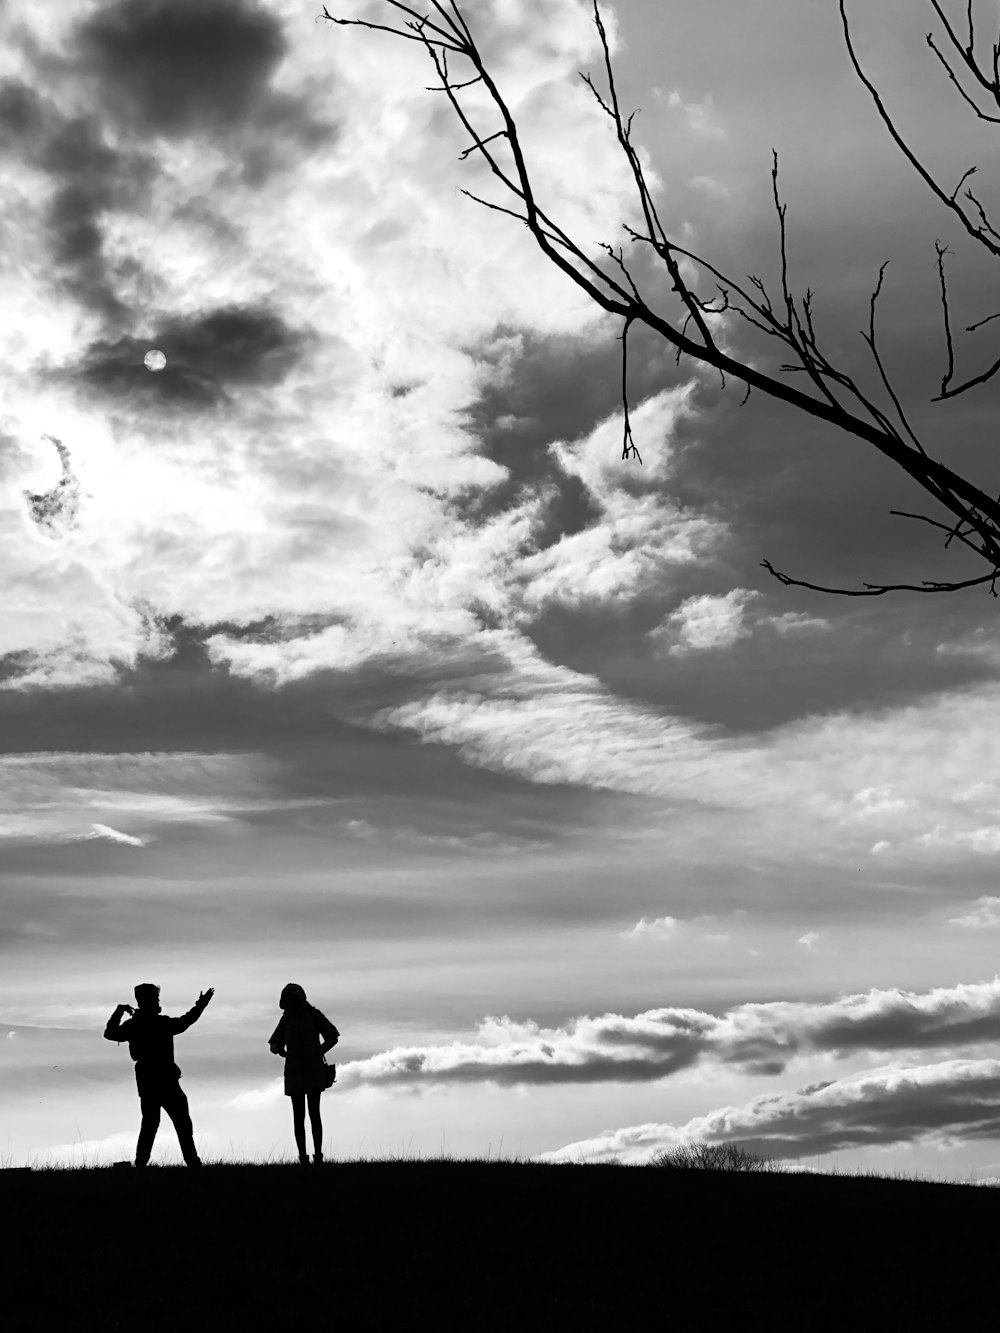 昼間の曇り空の下、木の枝の上に立つ2人のシルエット